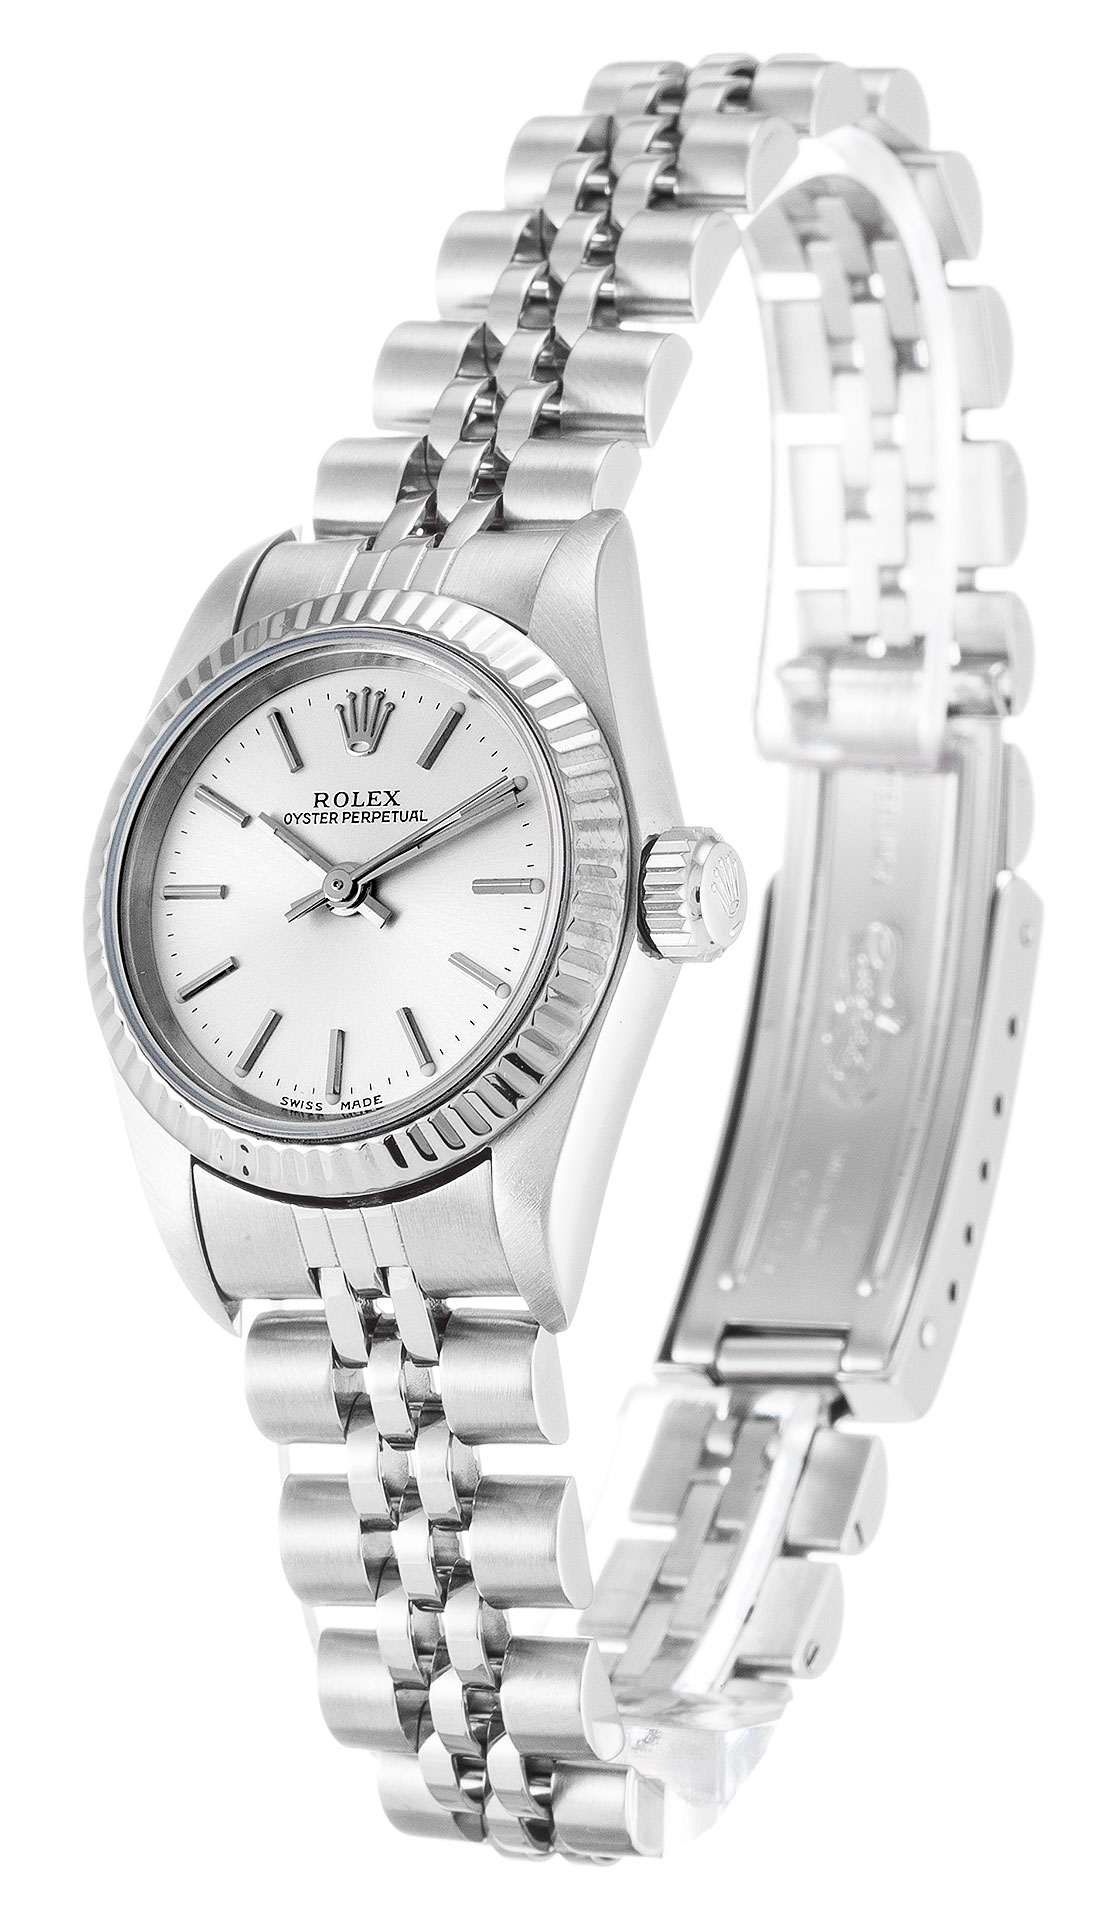 Découvrez la 24MM Rolex Lady Oyster Perpetual 67194, une montre exceptionnelle pour les femmes